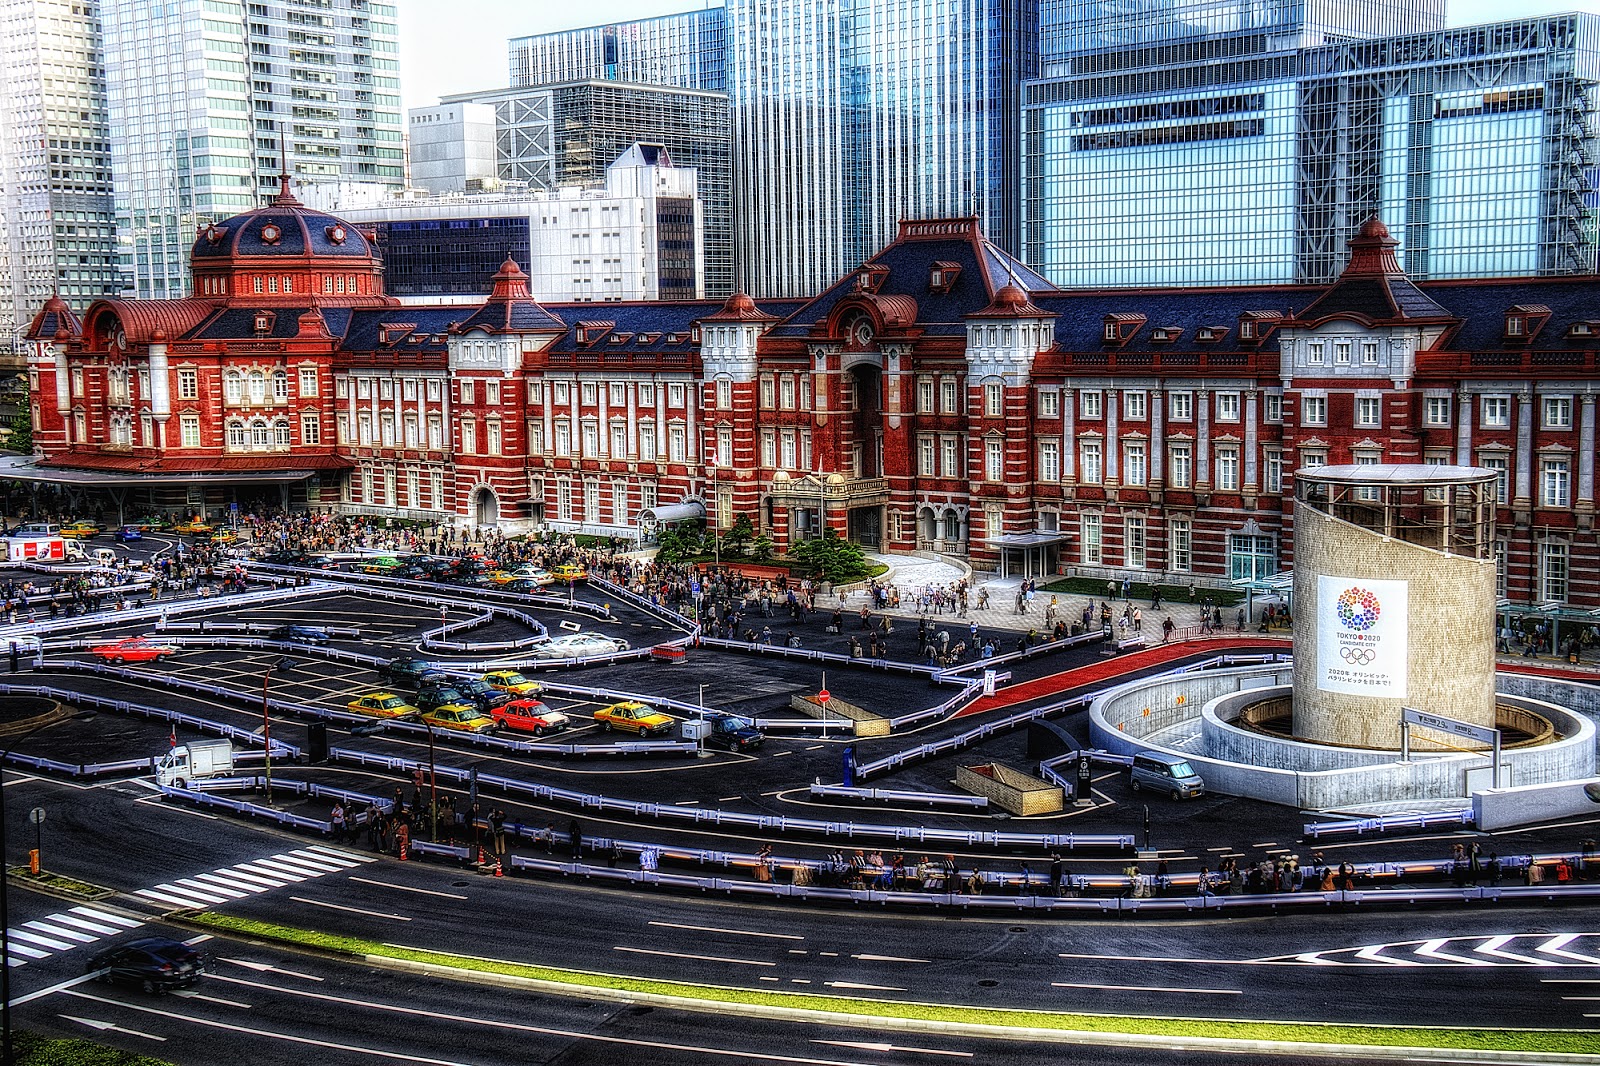 Tokyo station. Вокзал Токио. ЖД станция Токио. Центральный вокзал Токио. Вокзал в Токио 1914-Тацуно кинго.